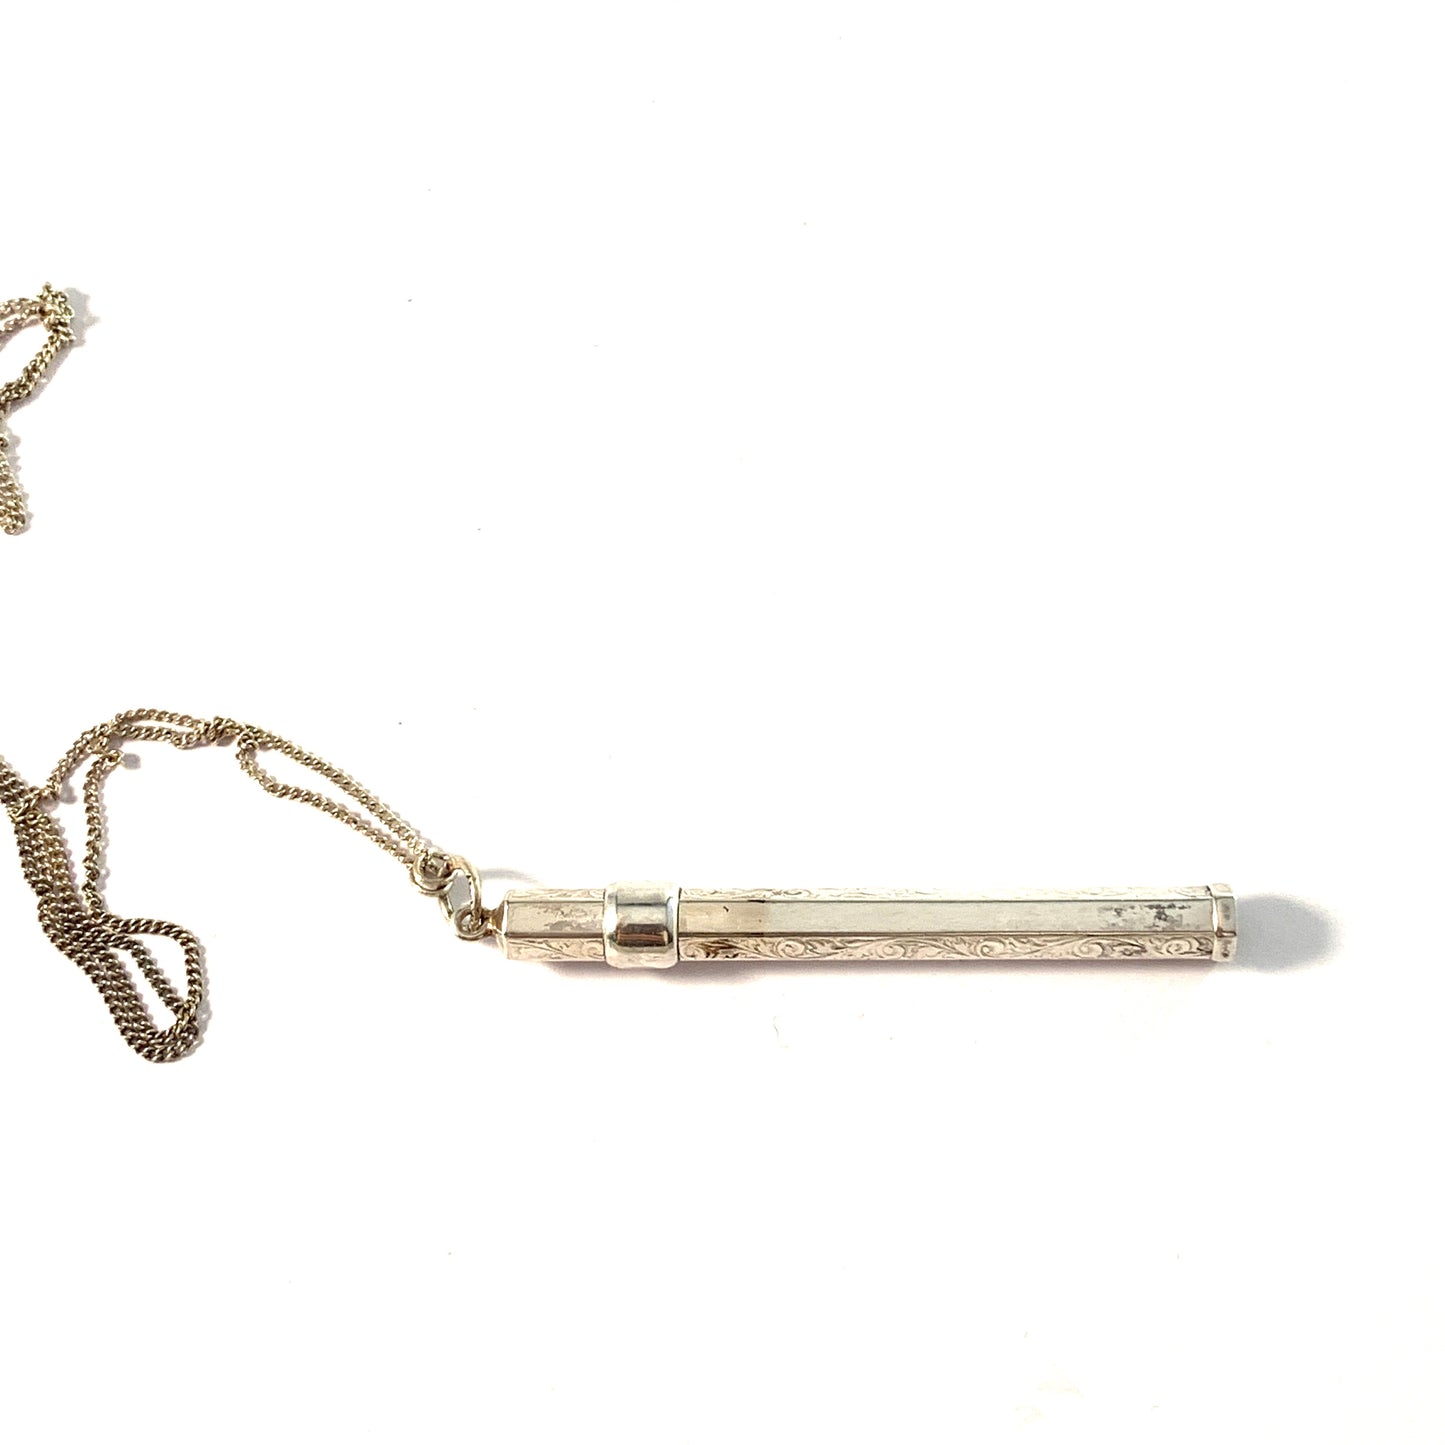 L.Gunnari, Finland 1934. Solid Silver Pencil Holder Pendant with Chain.